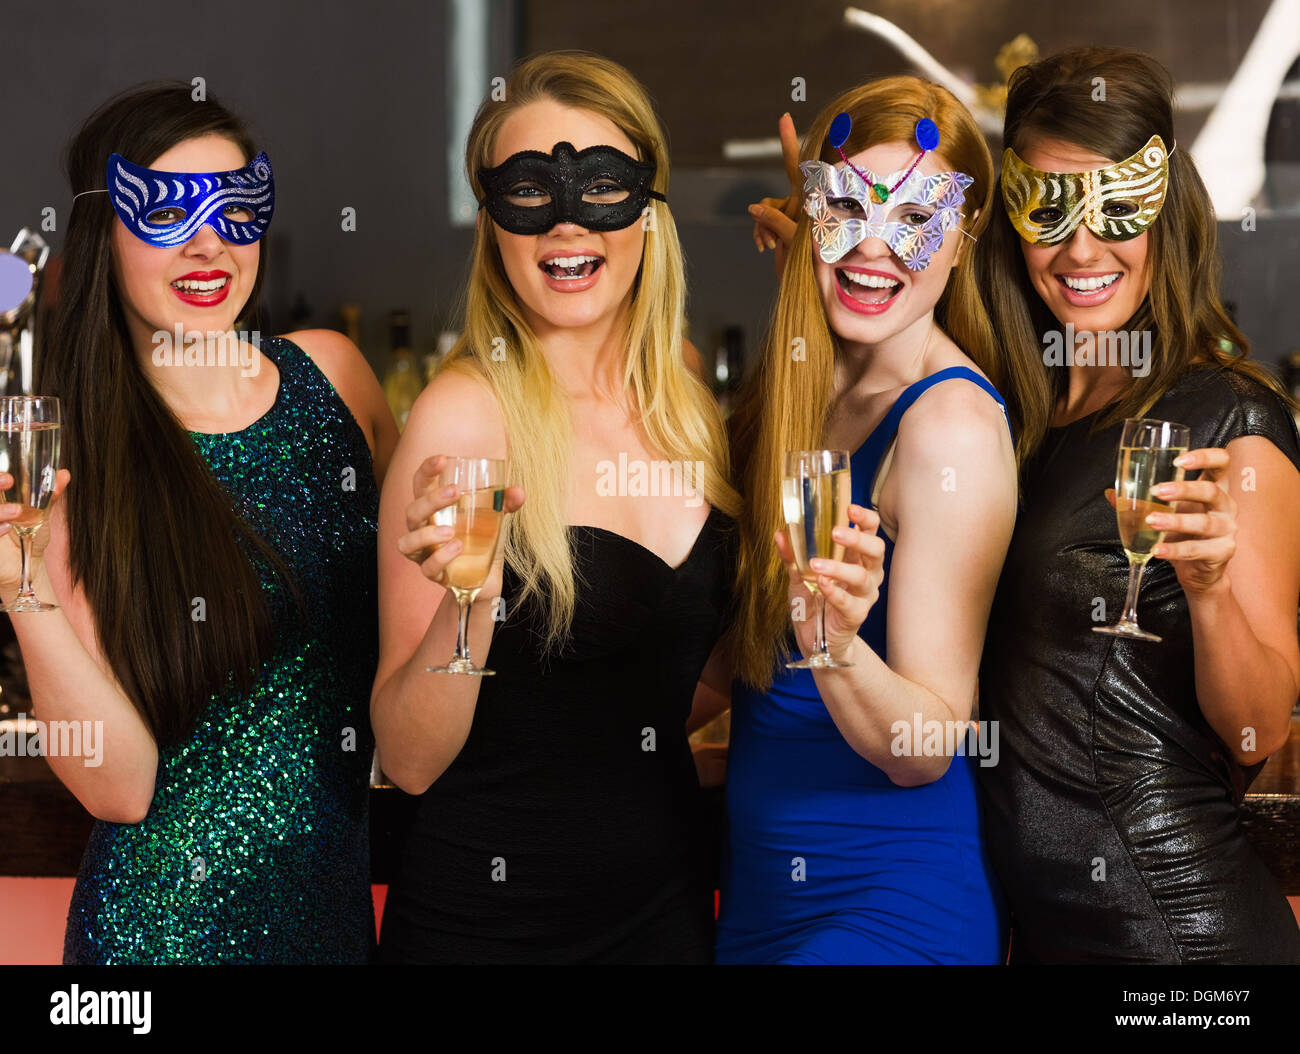 Ridere amici indossando maschere azienda bicchieri da champagne Foto Stock